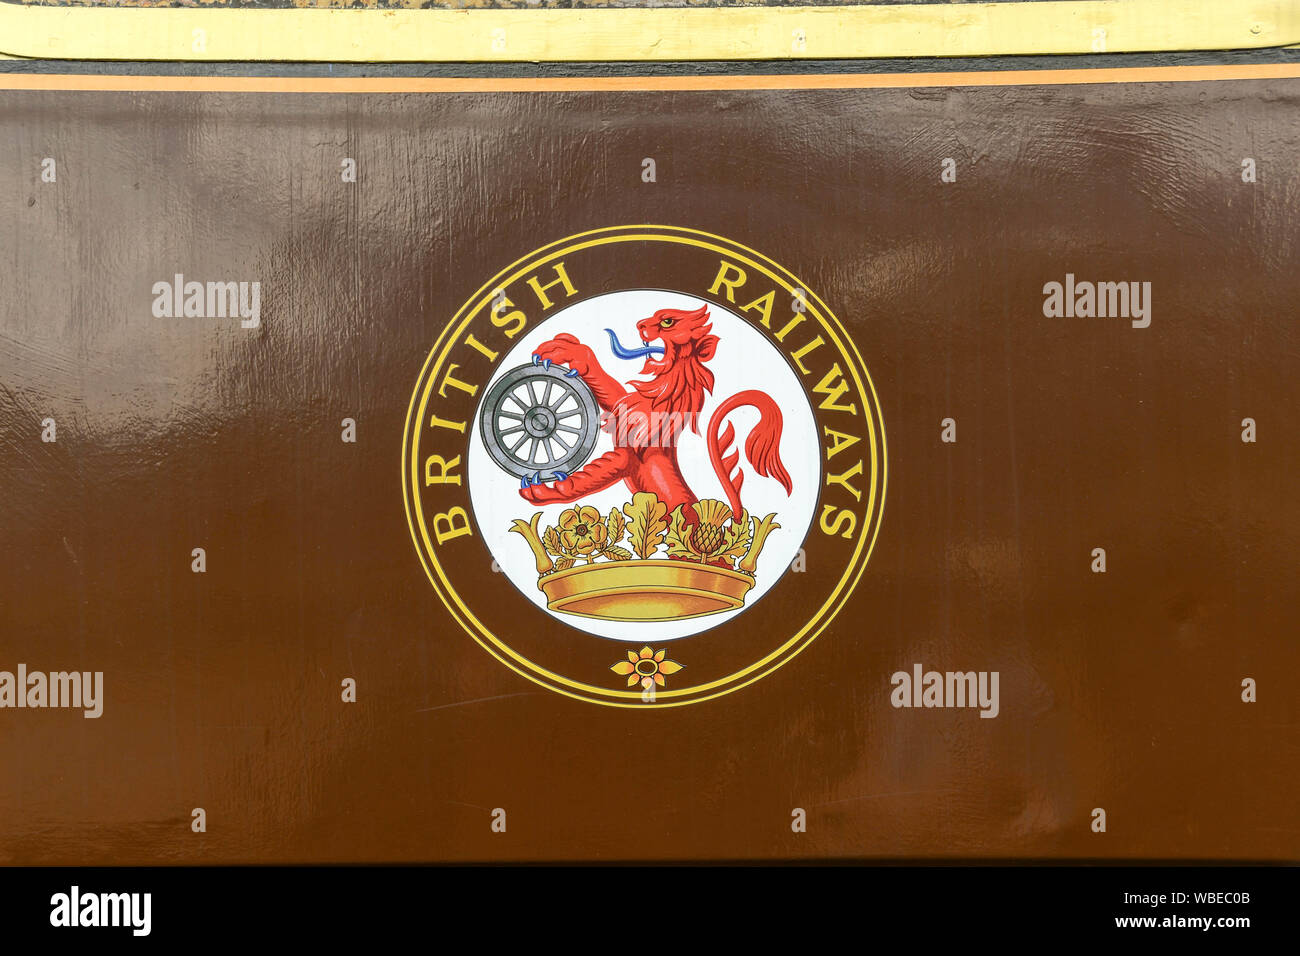 CRANMORE, Inghilterra - Luglio 2019: vista ravvicinata del vecchio British Railways logo sul lato di un vagone ferroviario sulla East Somerset Railway. Foto Stock